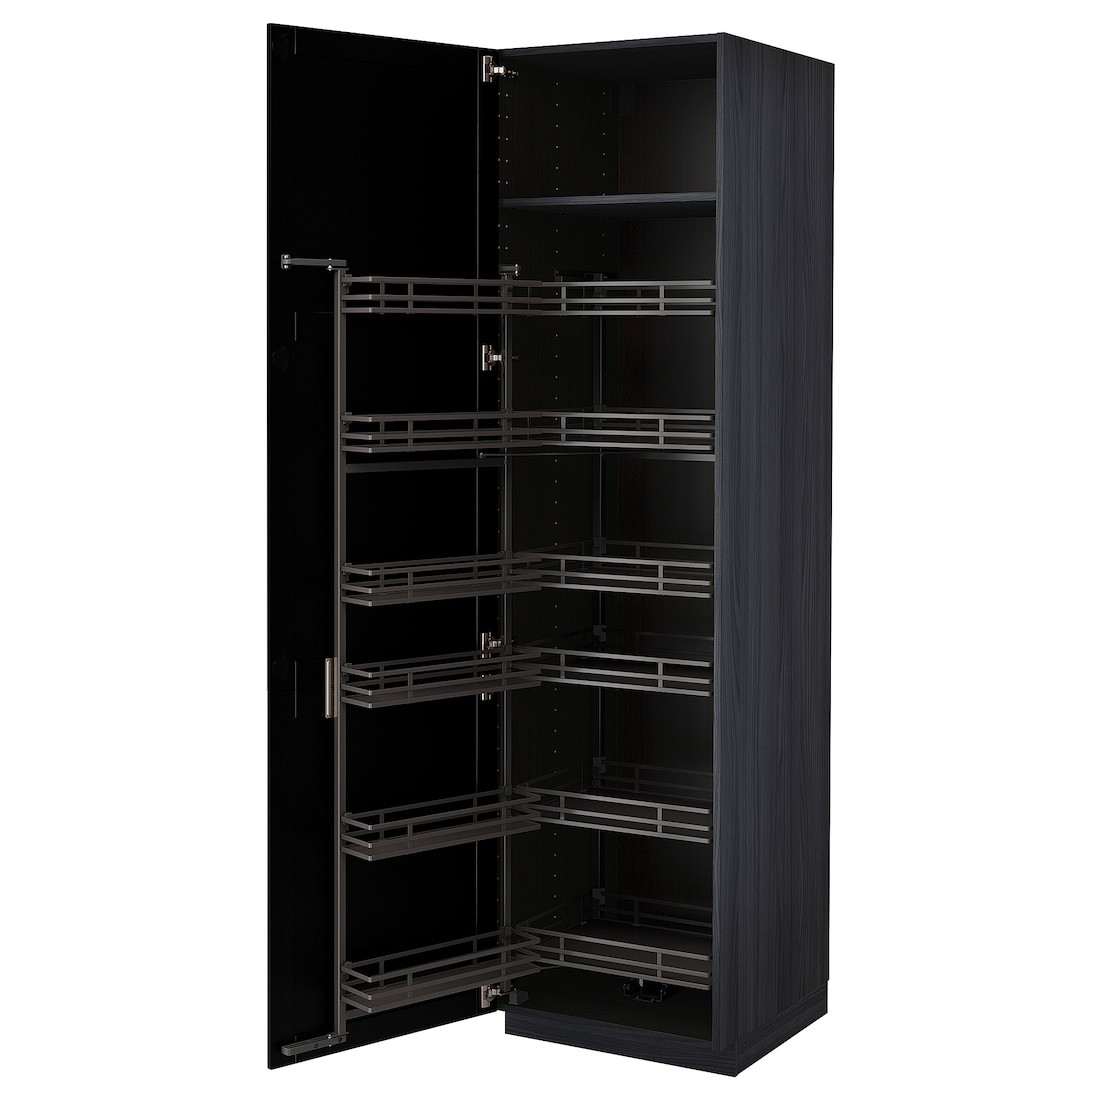 IKEA METOD МЕТОД Высокий шкаф с выдвижной кладовой, черный / Lerhyttan черная морилка, 60x60x220 см 89472138 894.721.38